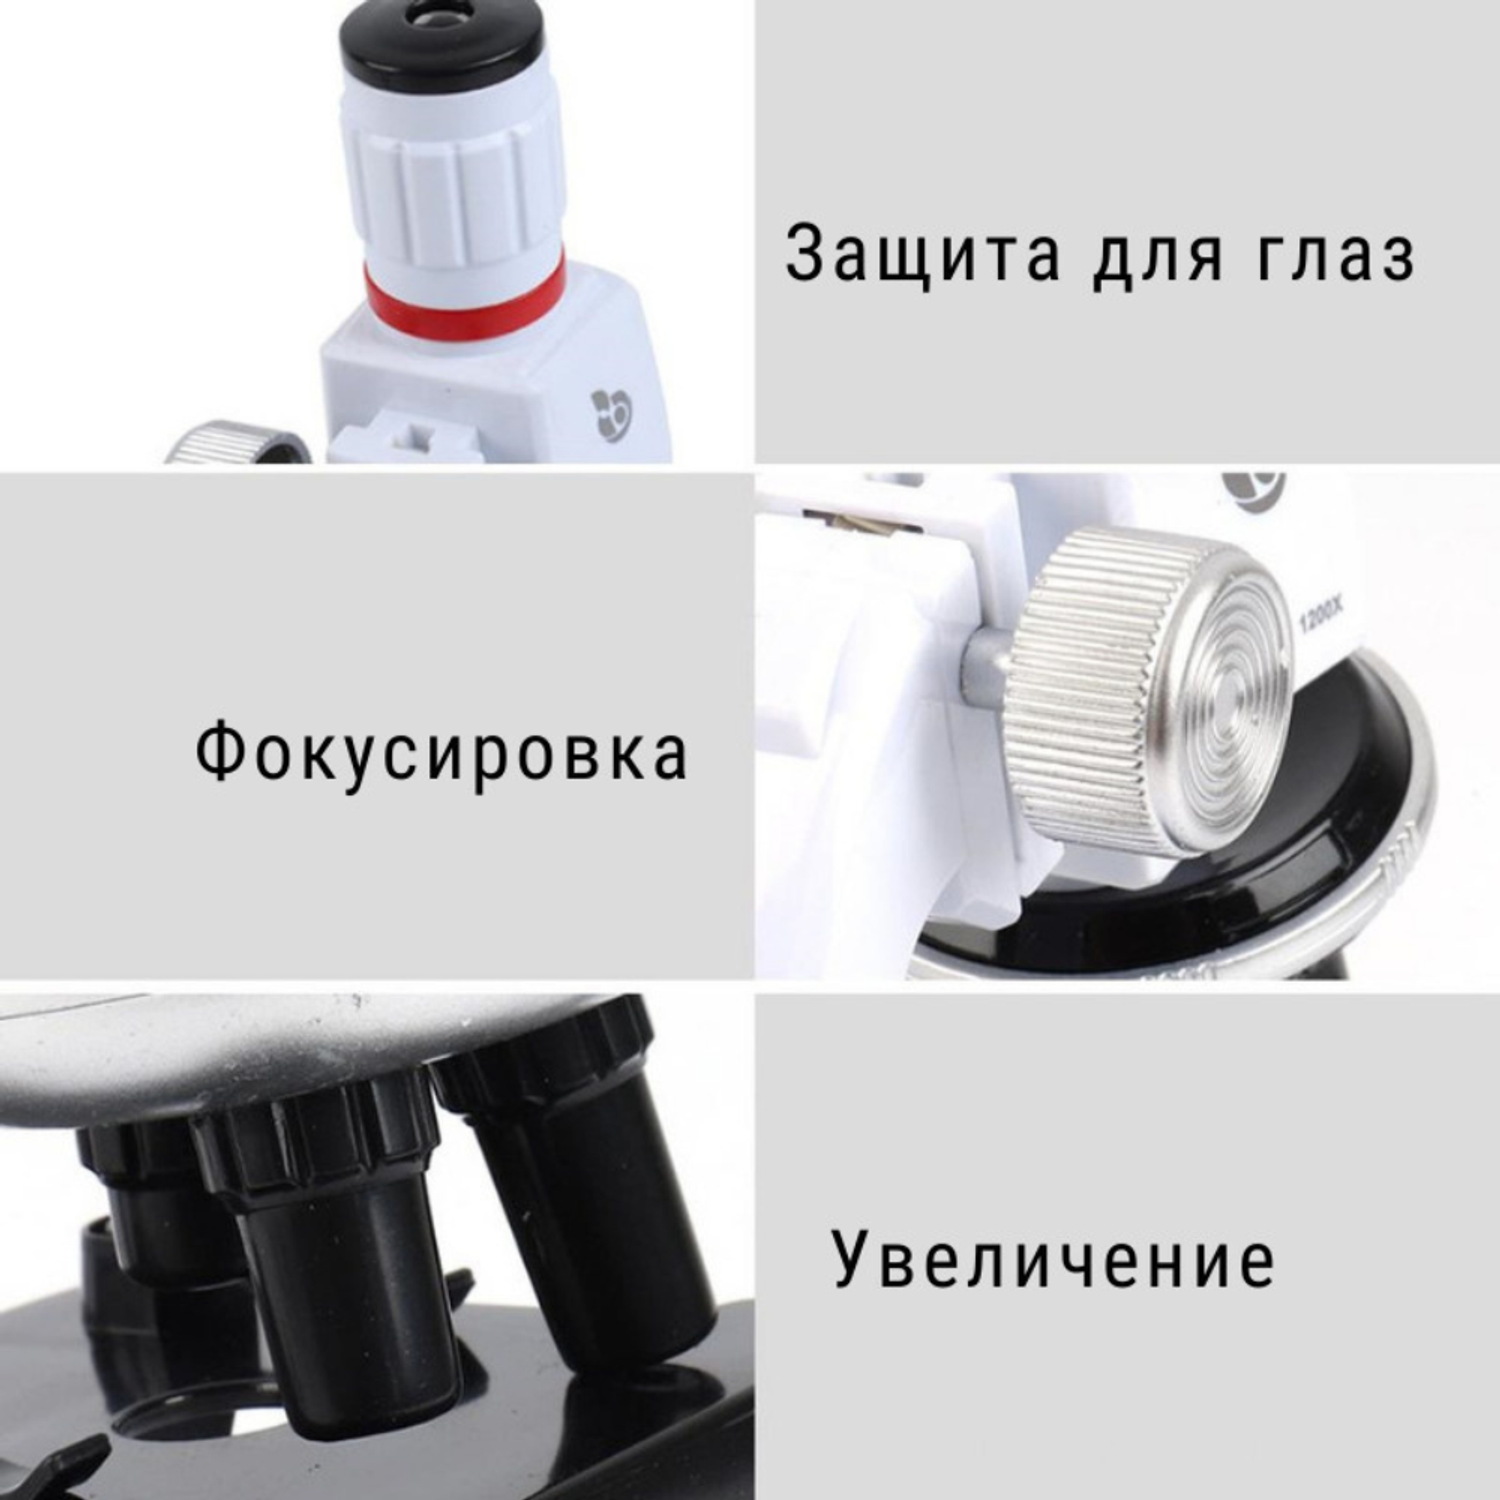 Детский микроскоп MagicStyle набор для опытов с держателем для смартфона и подсветкой - фото 3